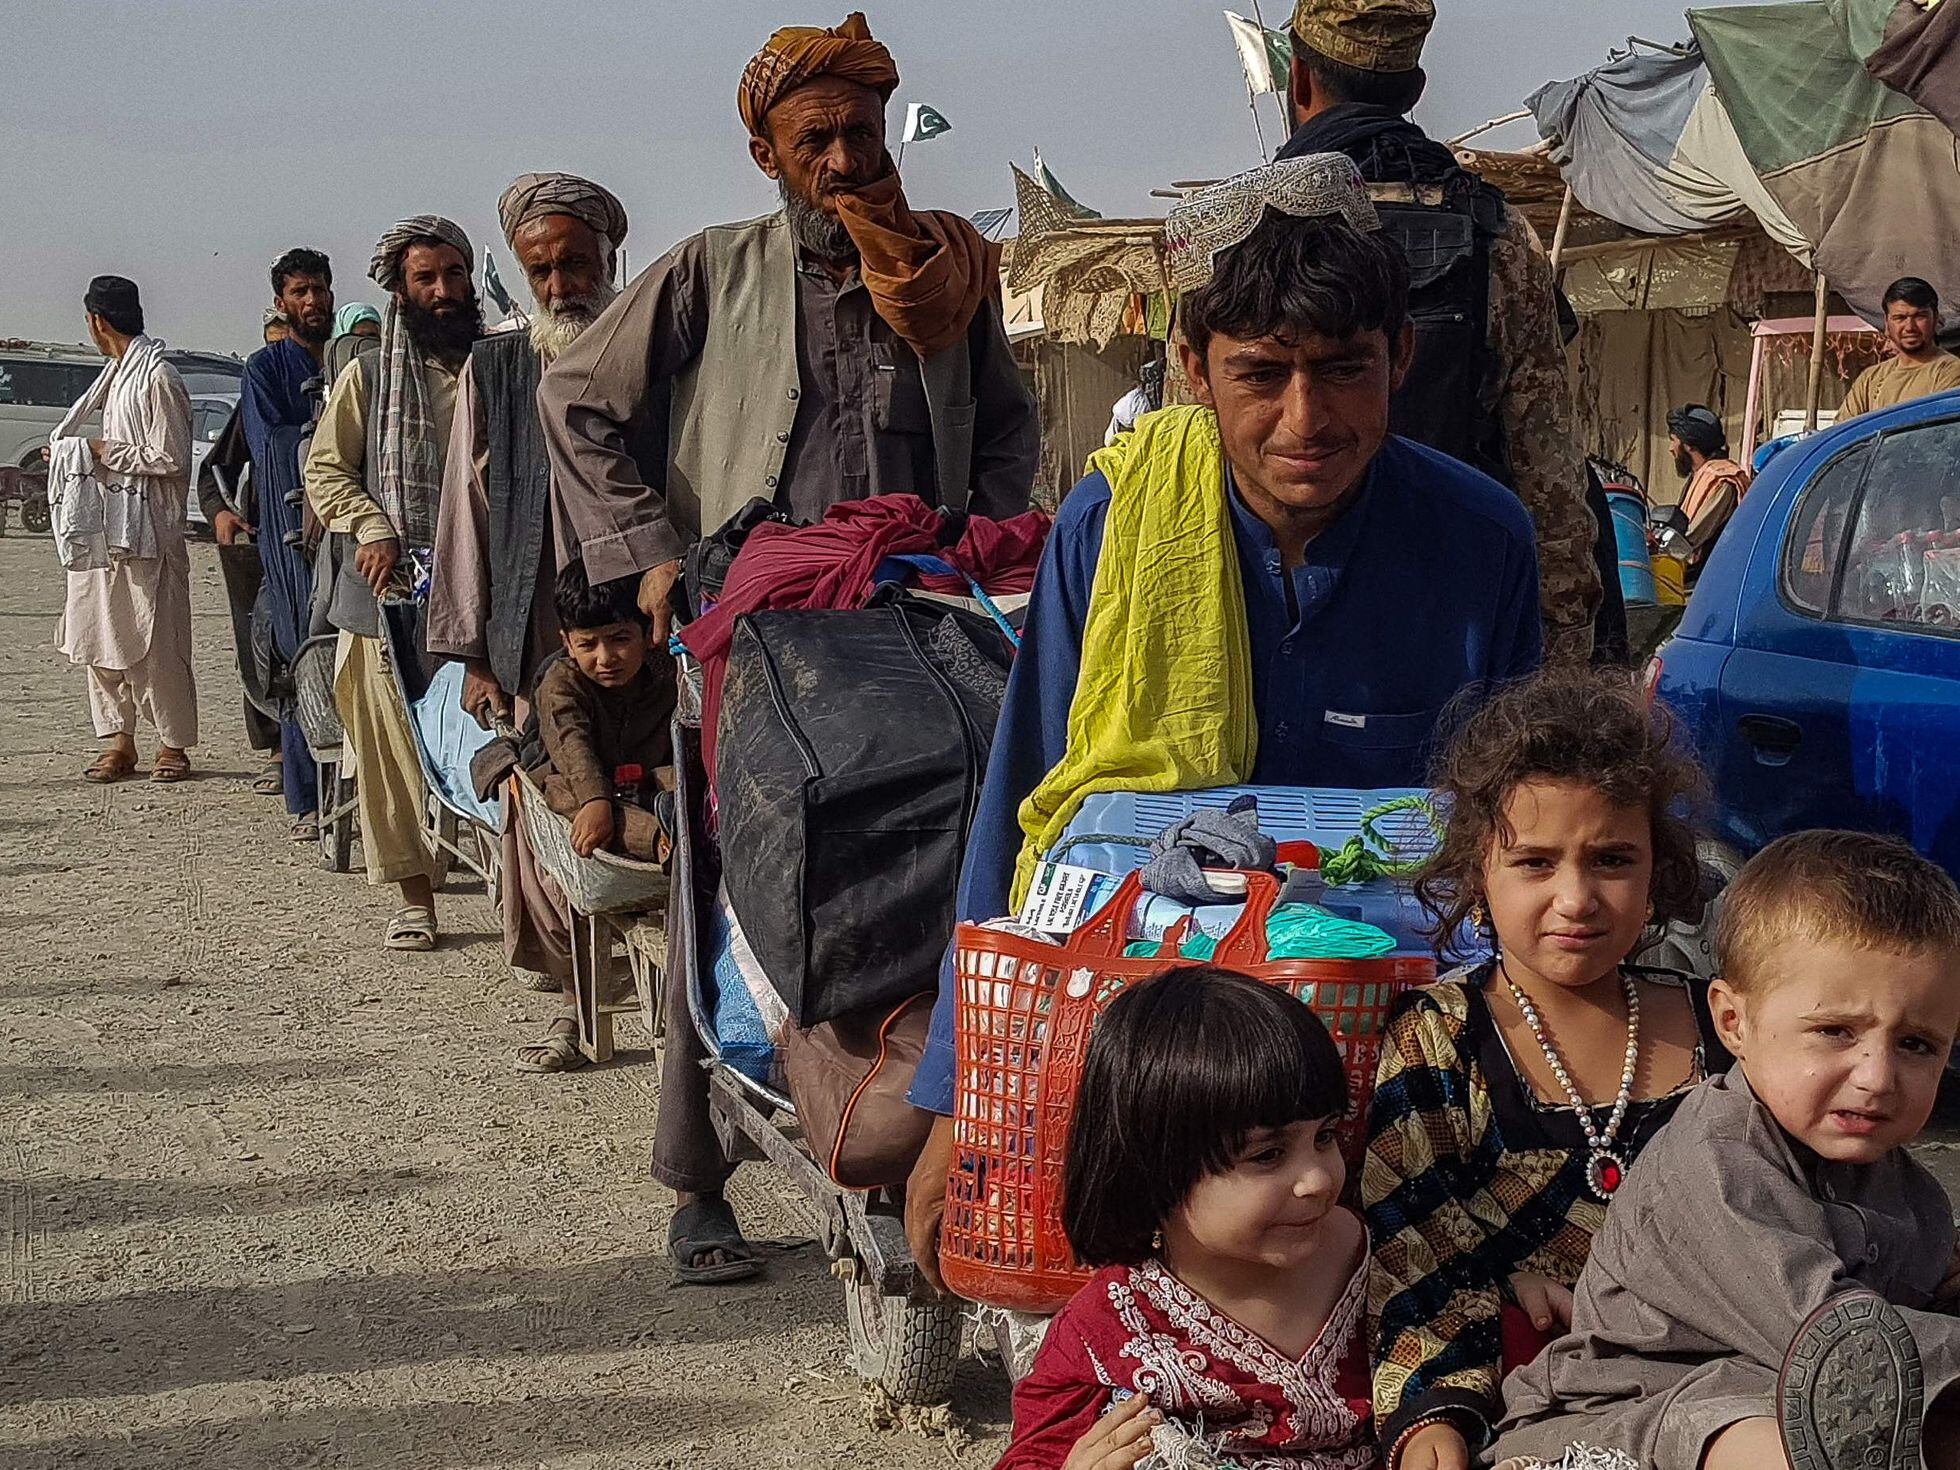 Afeganistão: O sacrifício perdido de duas gerações com a volta do